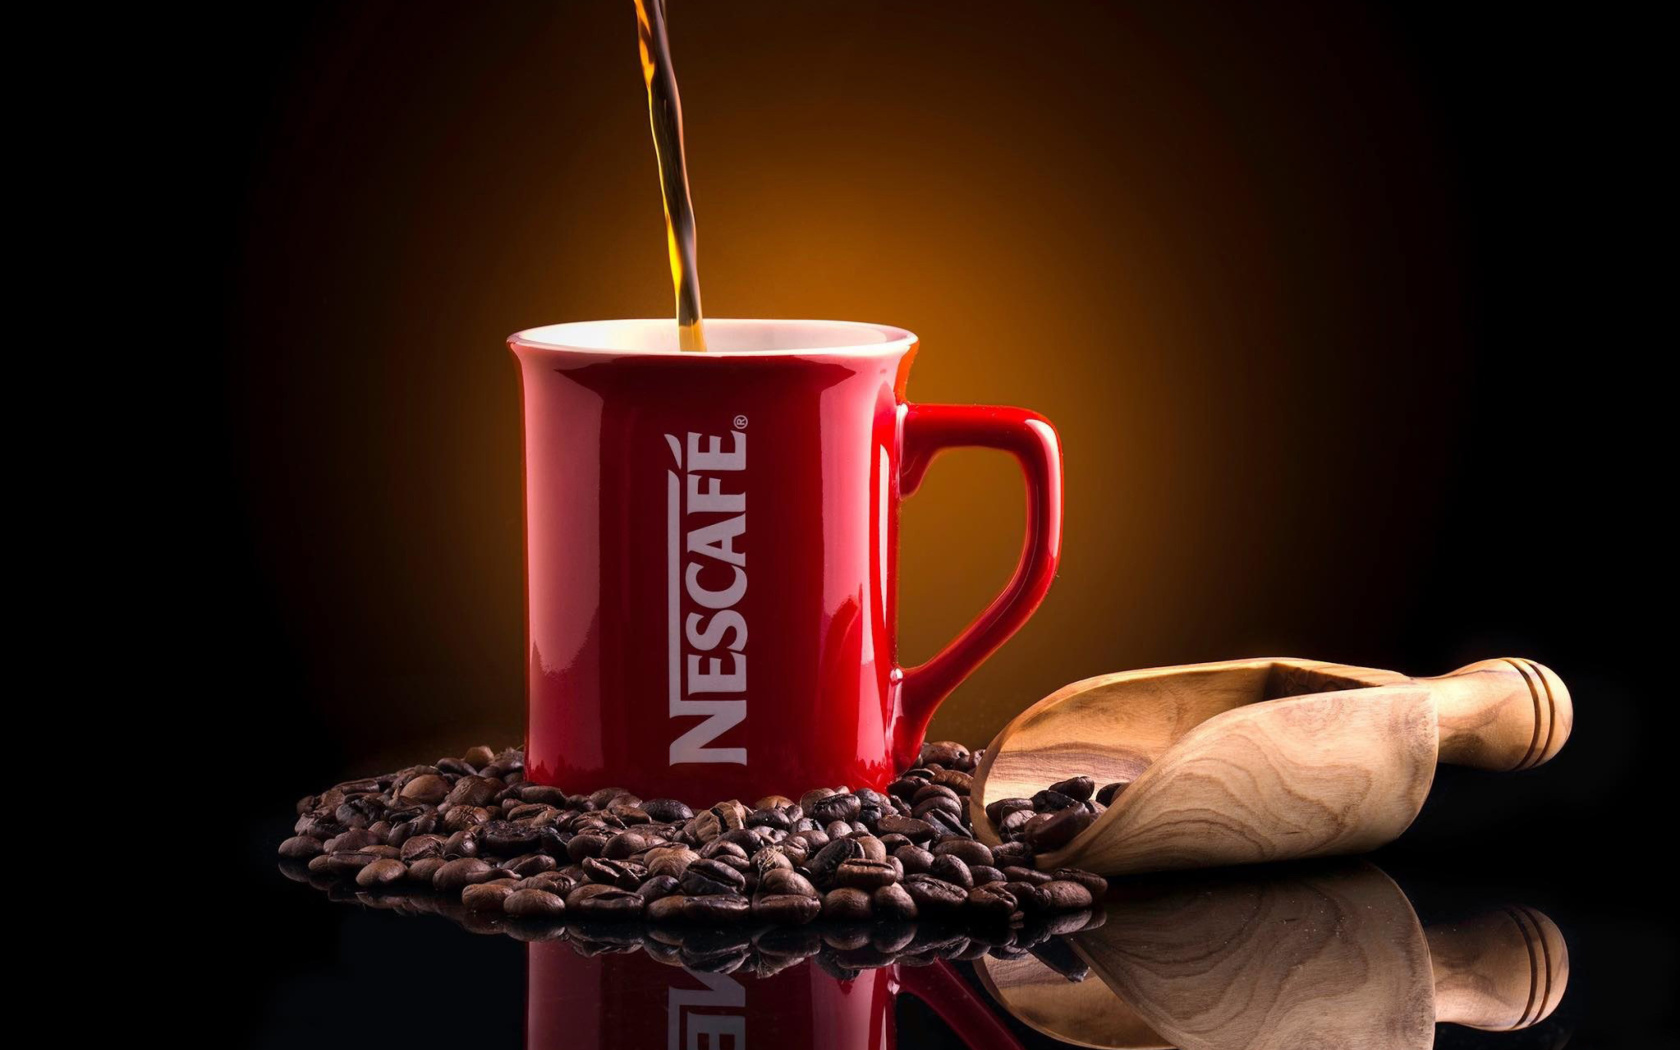 Sfondi Nescafe Coffee 1680x1050